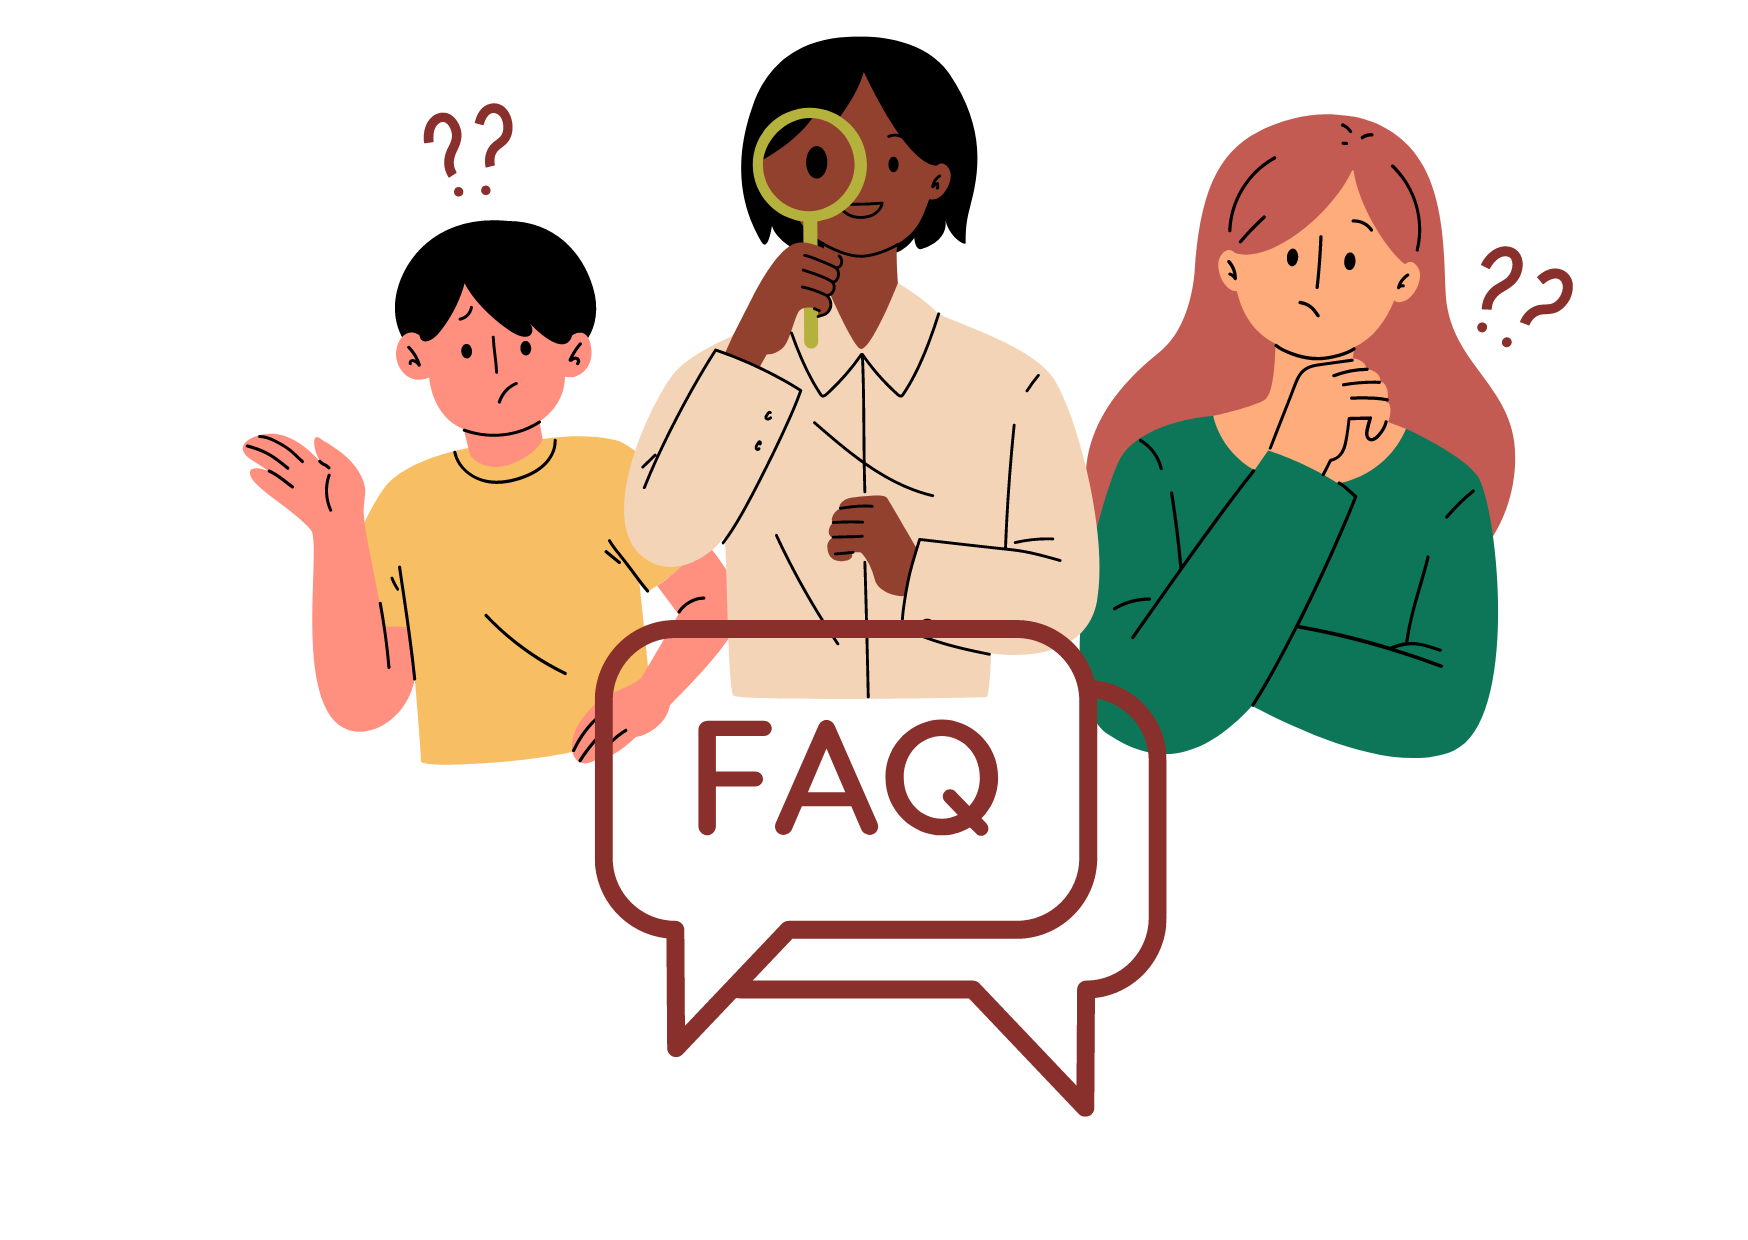 imagen con personas e interrogaciones, aparece un cartel en el que se lee "preguntas frequentes"